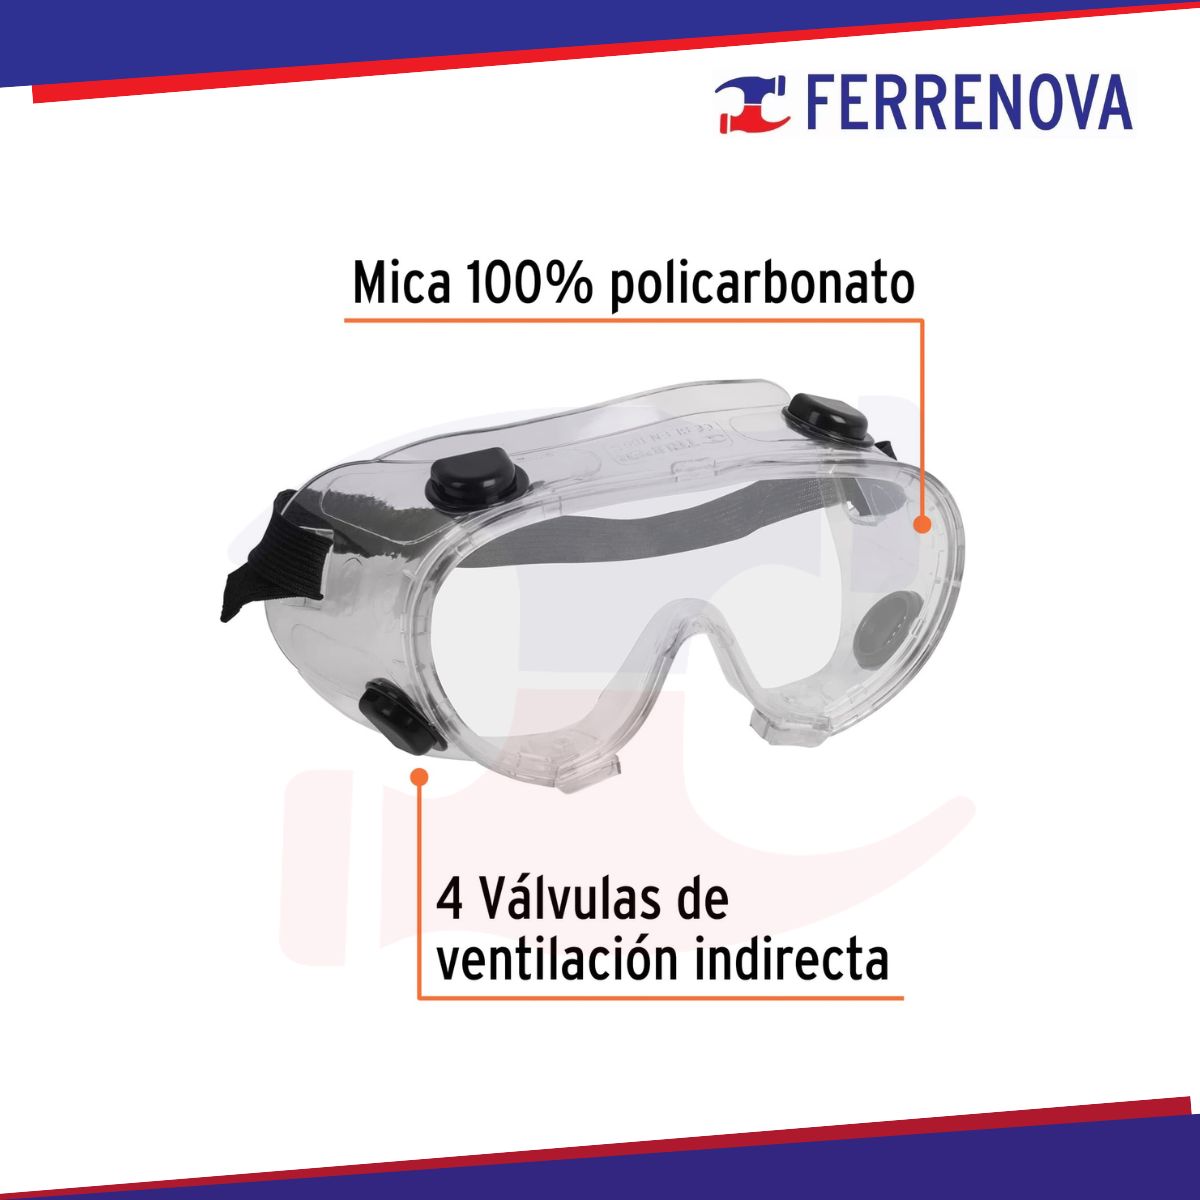 Goggles De Seguridad Con Válvulas De Ventilación Indirecta Truper 12220